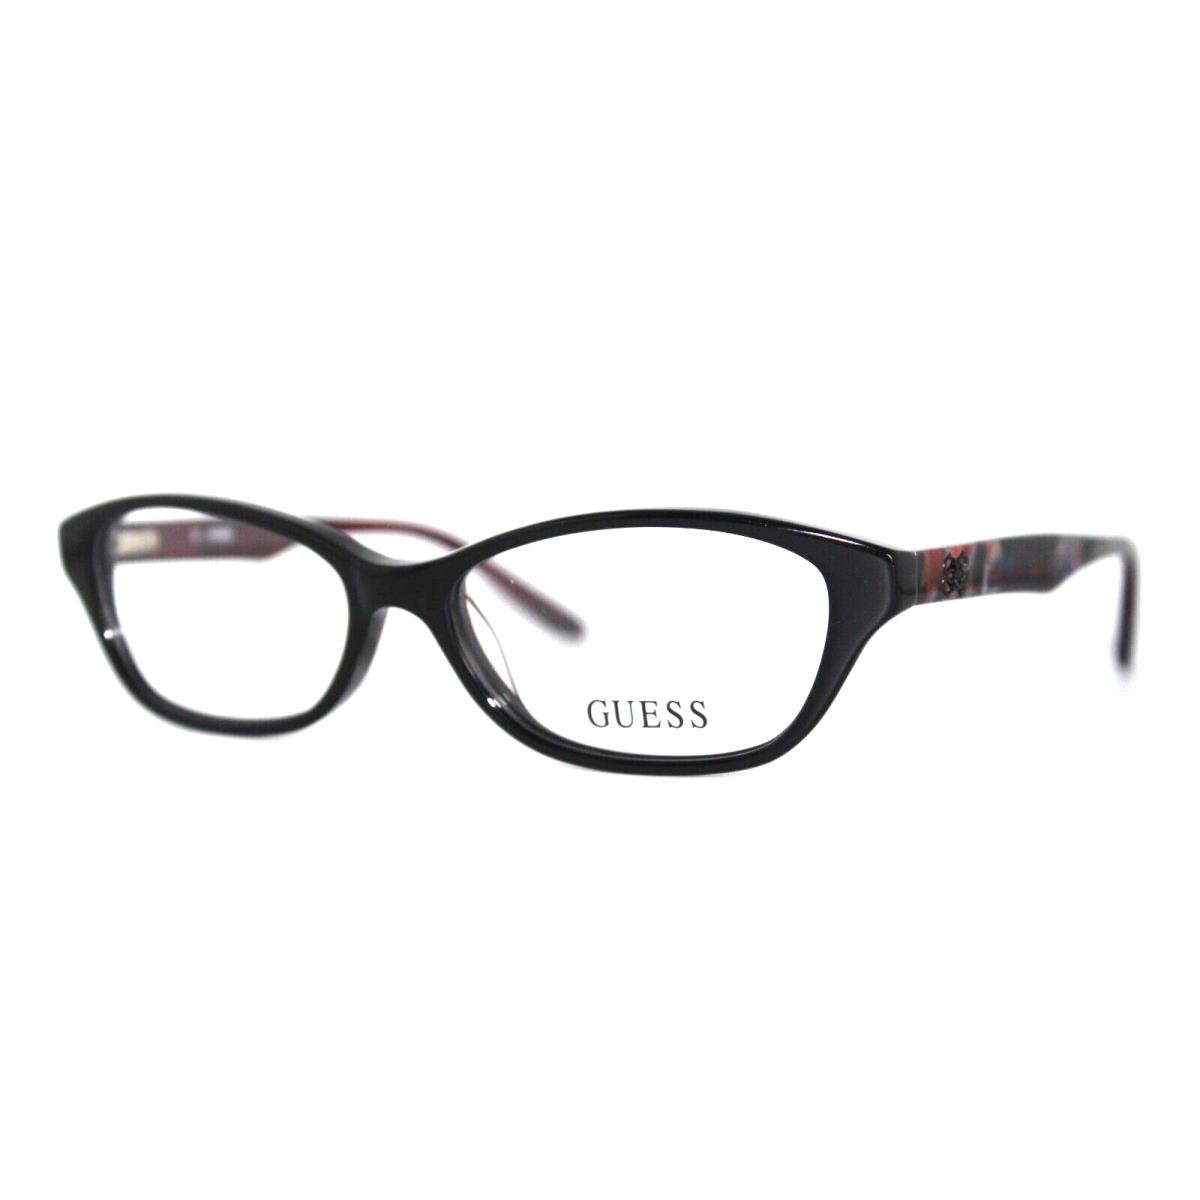 Guess GU2417 Blk Black Eyeglasses Frames 52-15-135MM W/case - Frame: Black